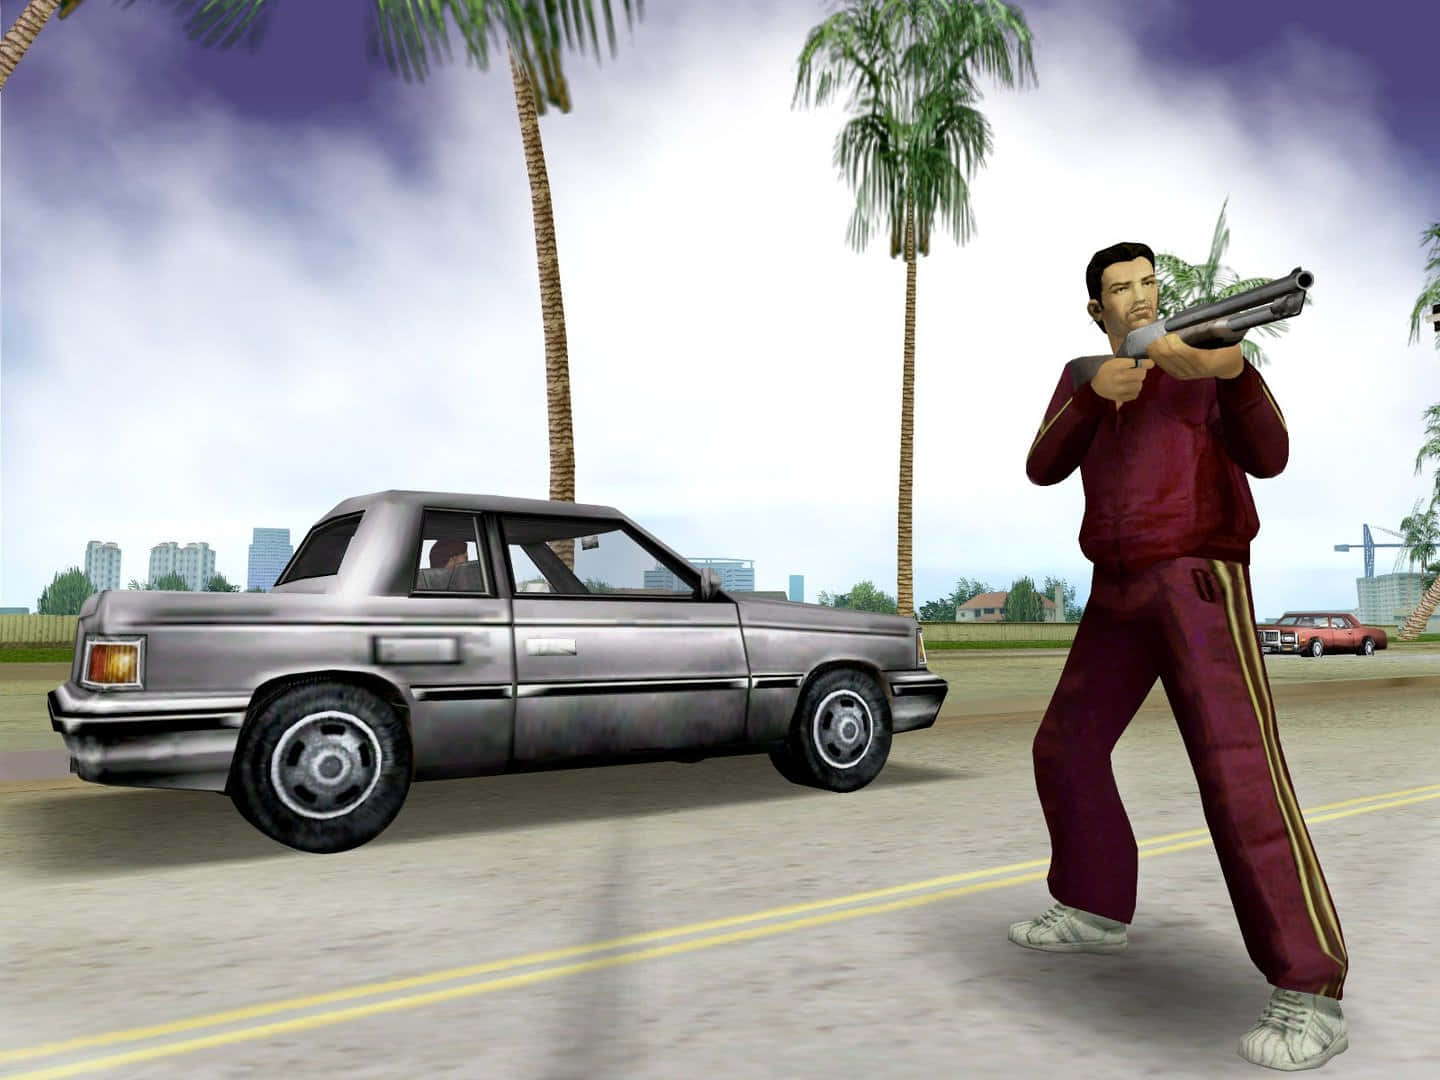 Immaginoche Tu Stia Cercando Un'immagine Di Un Personaggio Di Gta (grand Theft Auto) Con Una Tuta Rossa Da Salto.